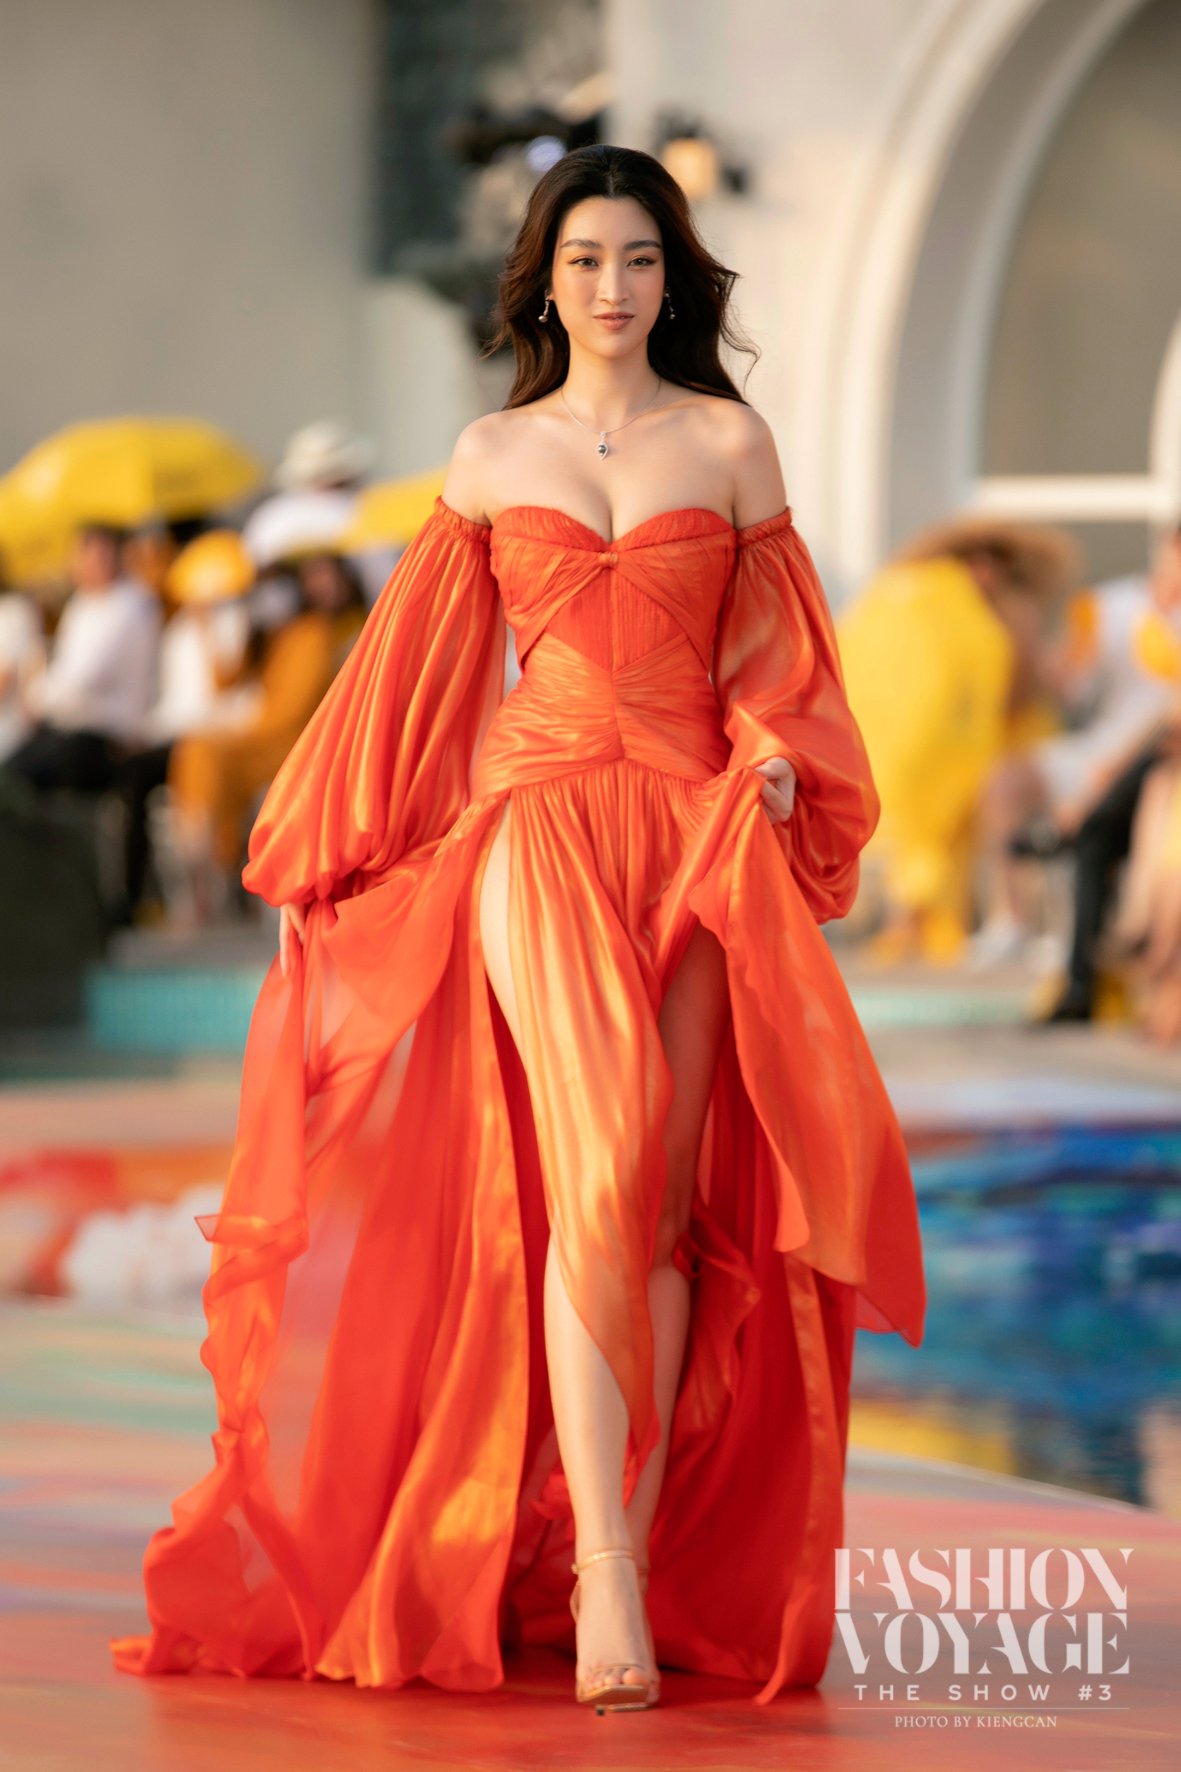 Mặc dù tôn lên lợi thế về đôi chân dài, bộ váy suýt nữa đã khiến Hoa hậu Đỗ Mỹ Linh gặp phải tình huống khó xử